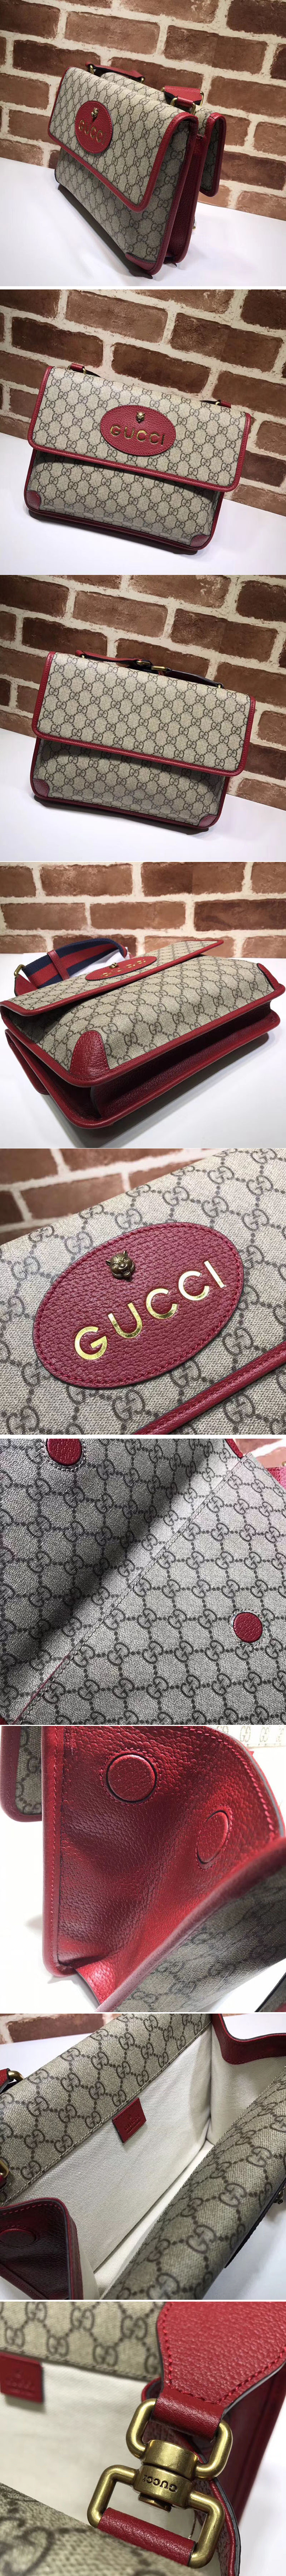 Replica Gucci 495654 GG Supreme Canvas Messenger Bags Red